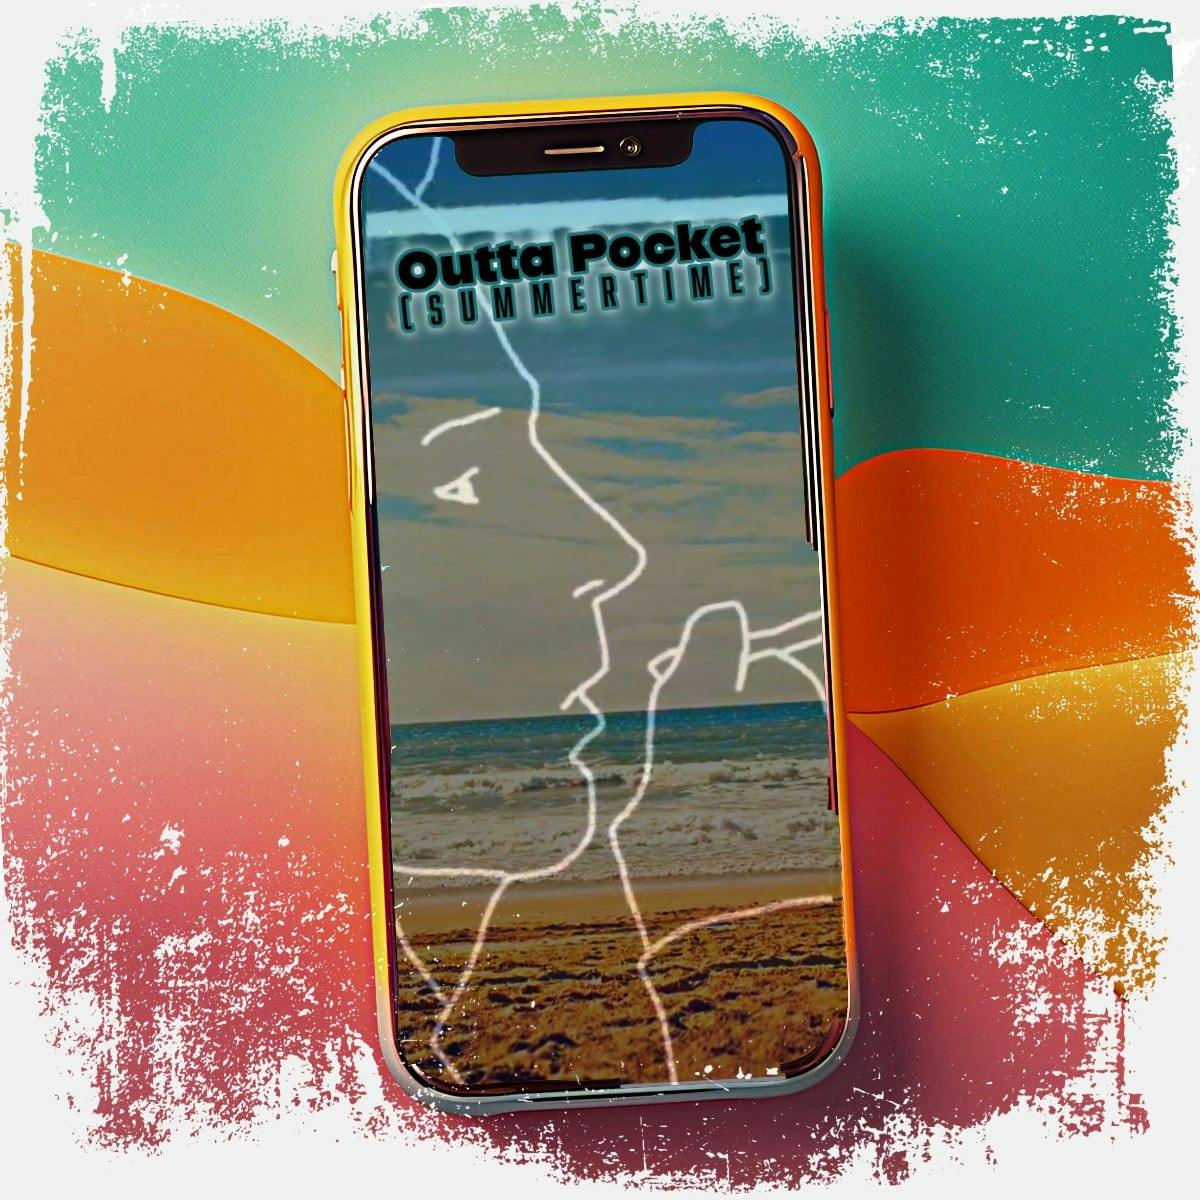 Outta Pocket (Summertime)